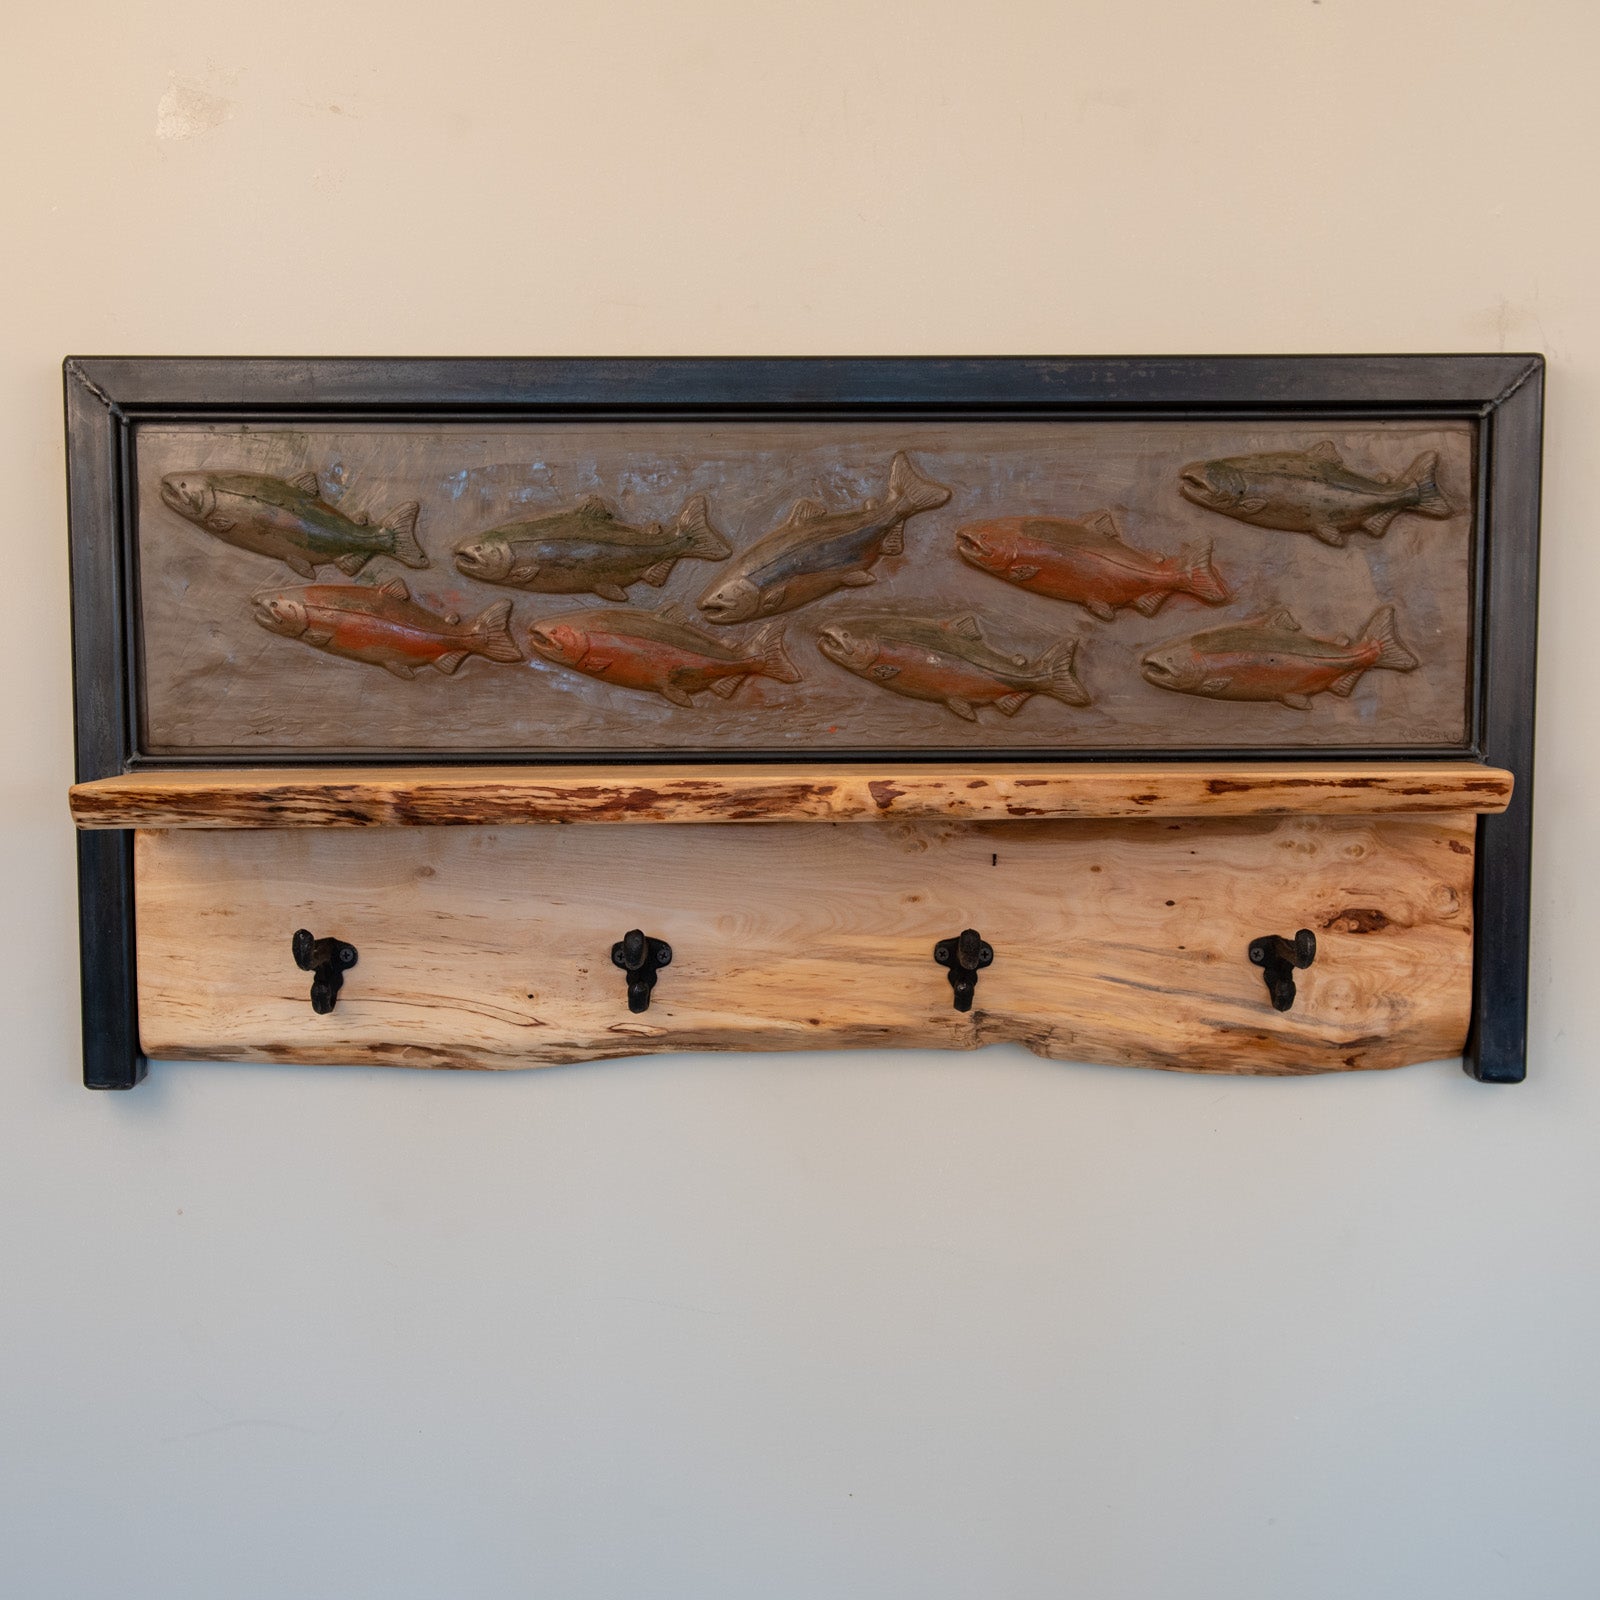 Salmon wall shelf with hooks